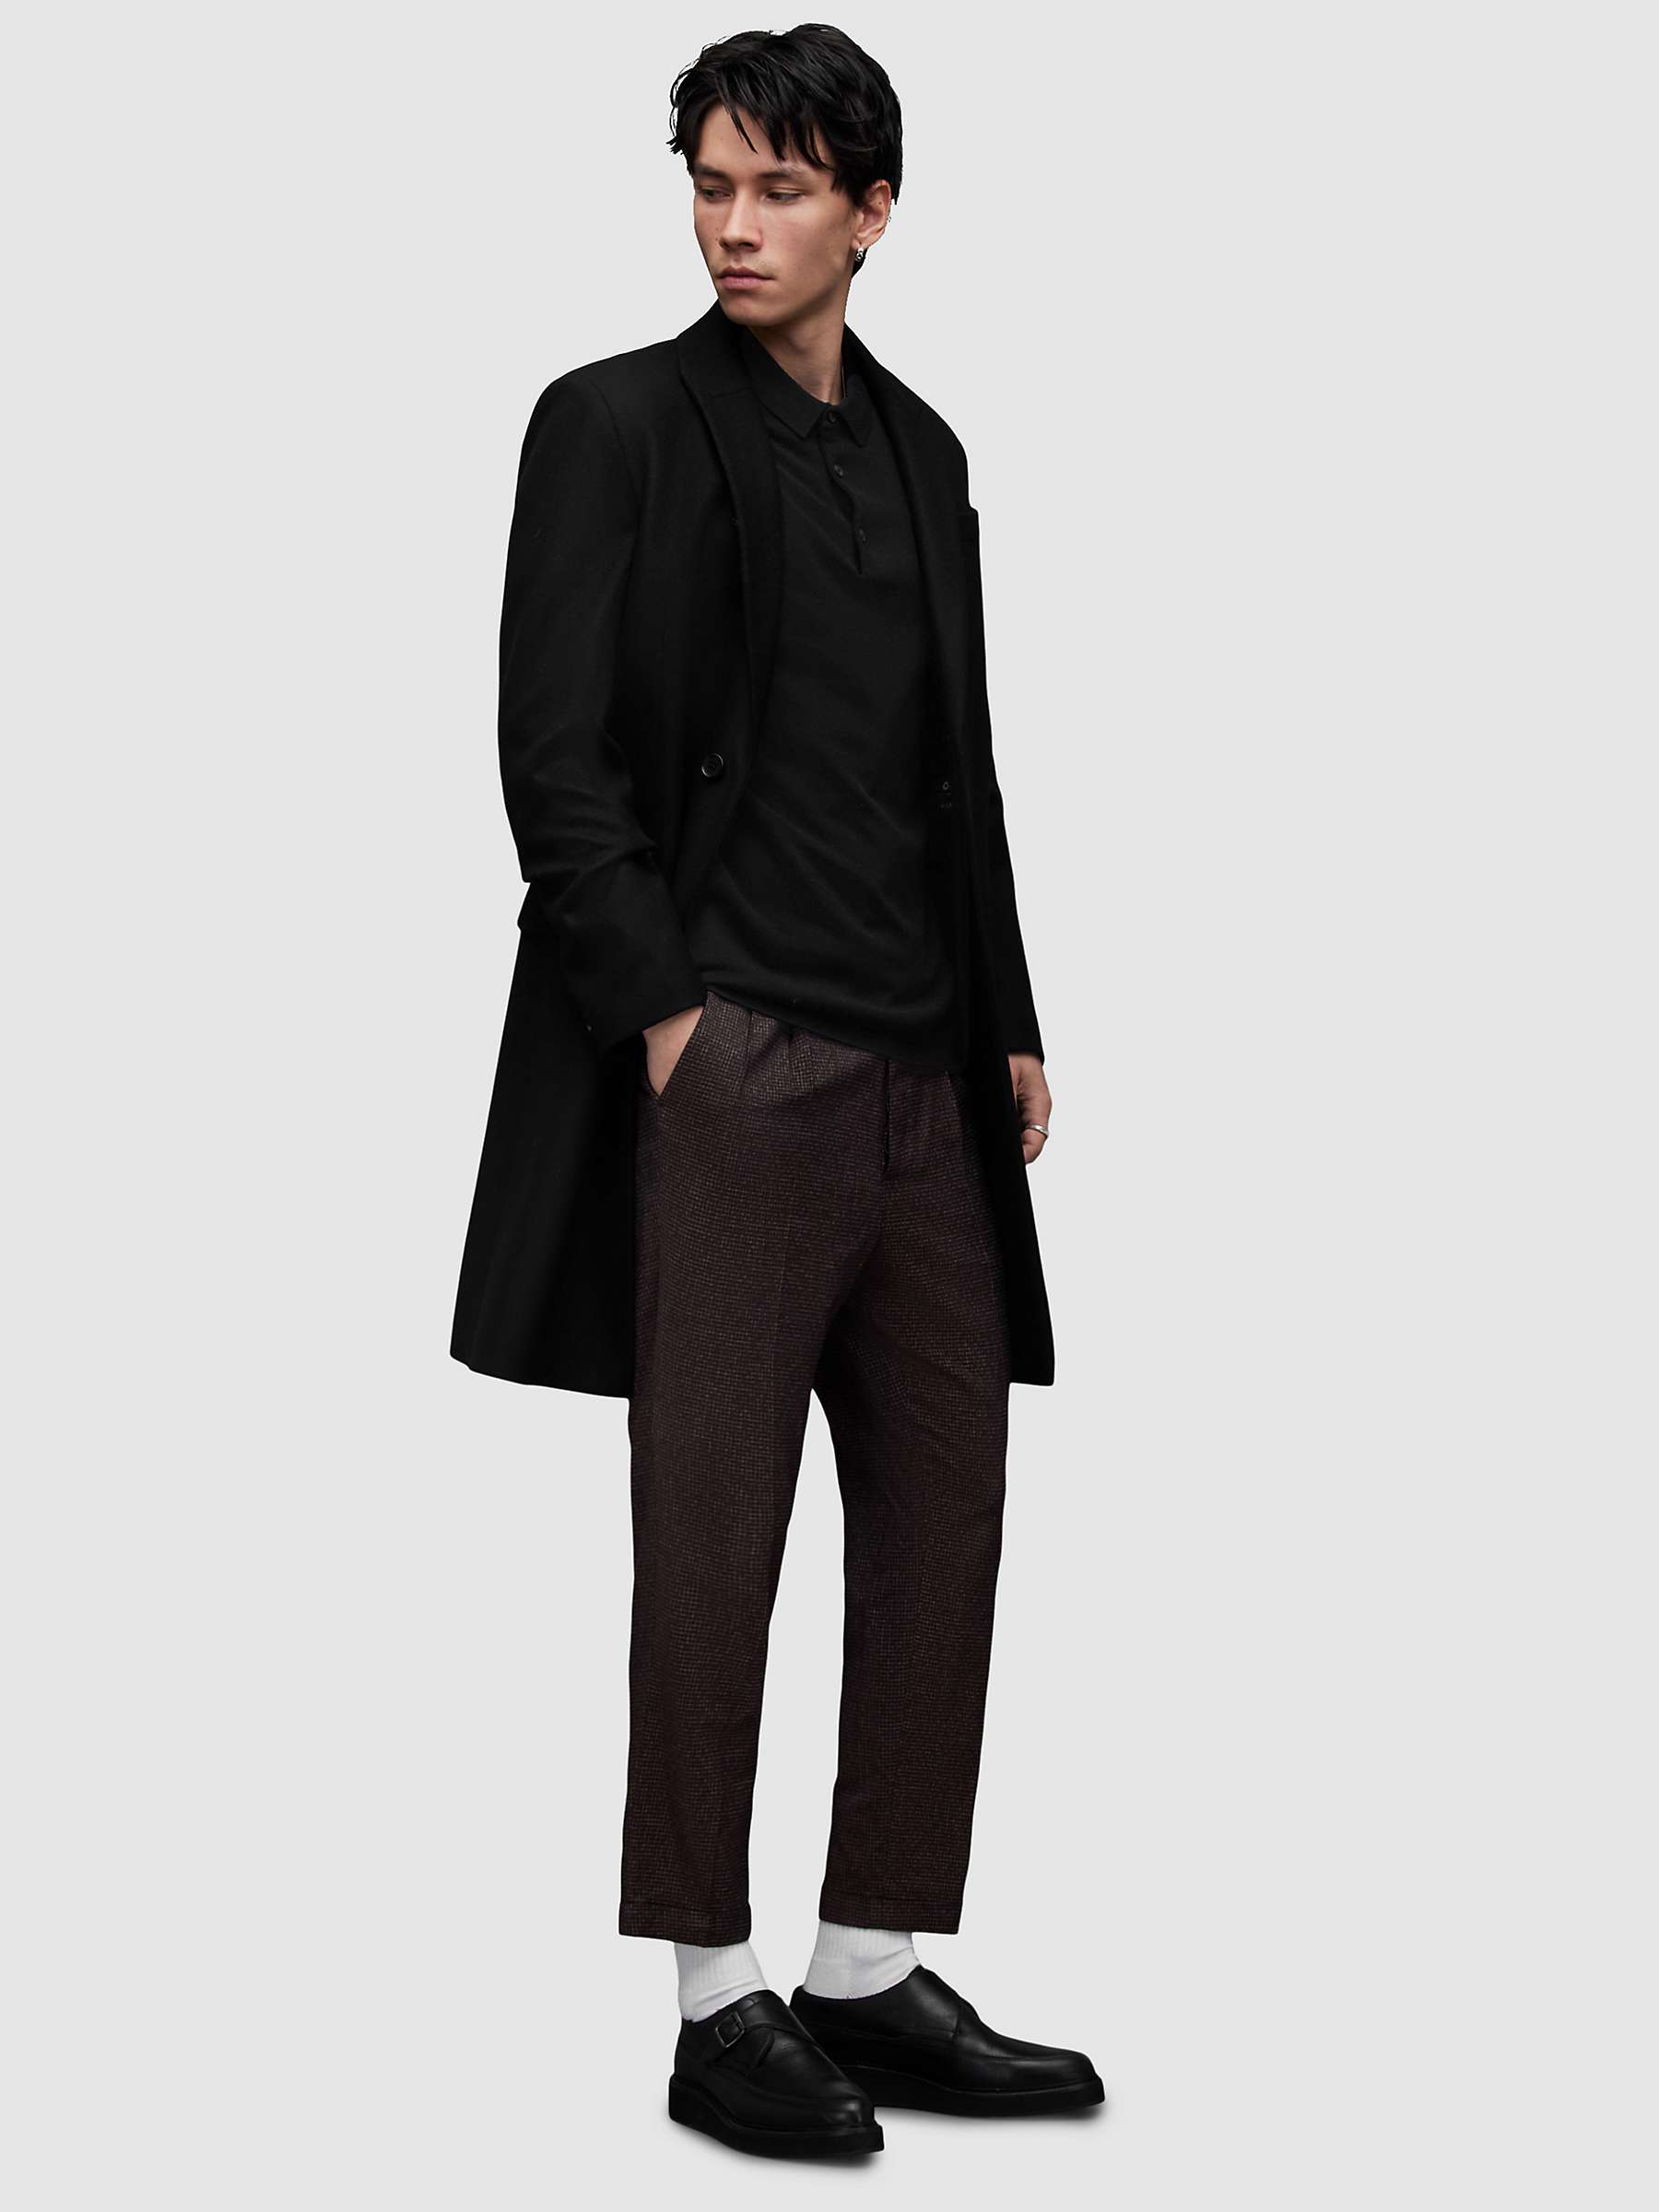 Buy AllSaints Mode Merino Short Sleeve Polo Shirt Online at johnlewis.com